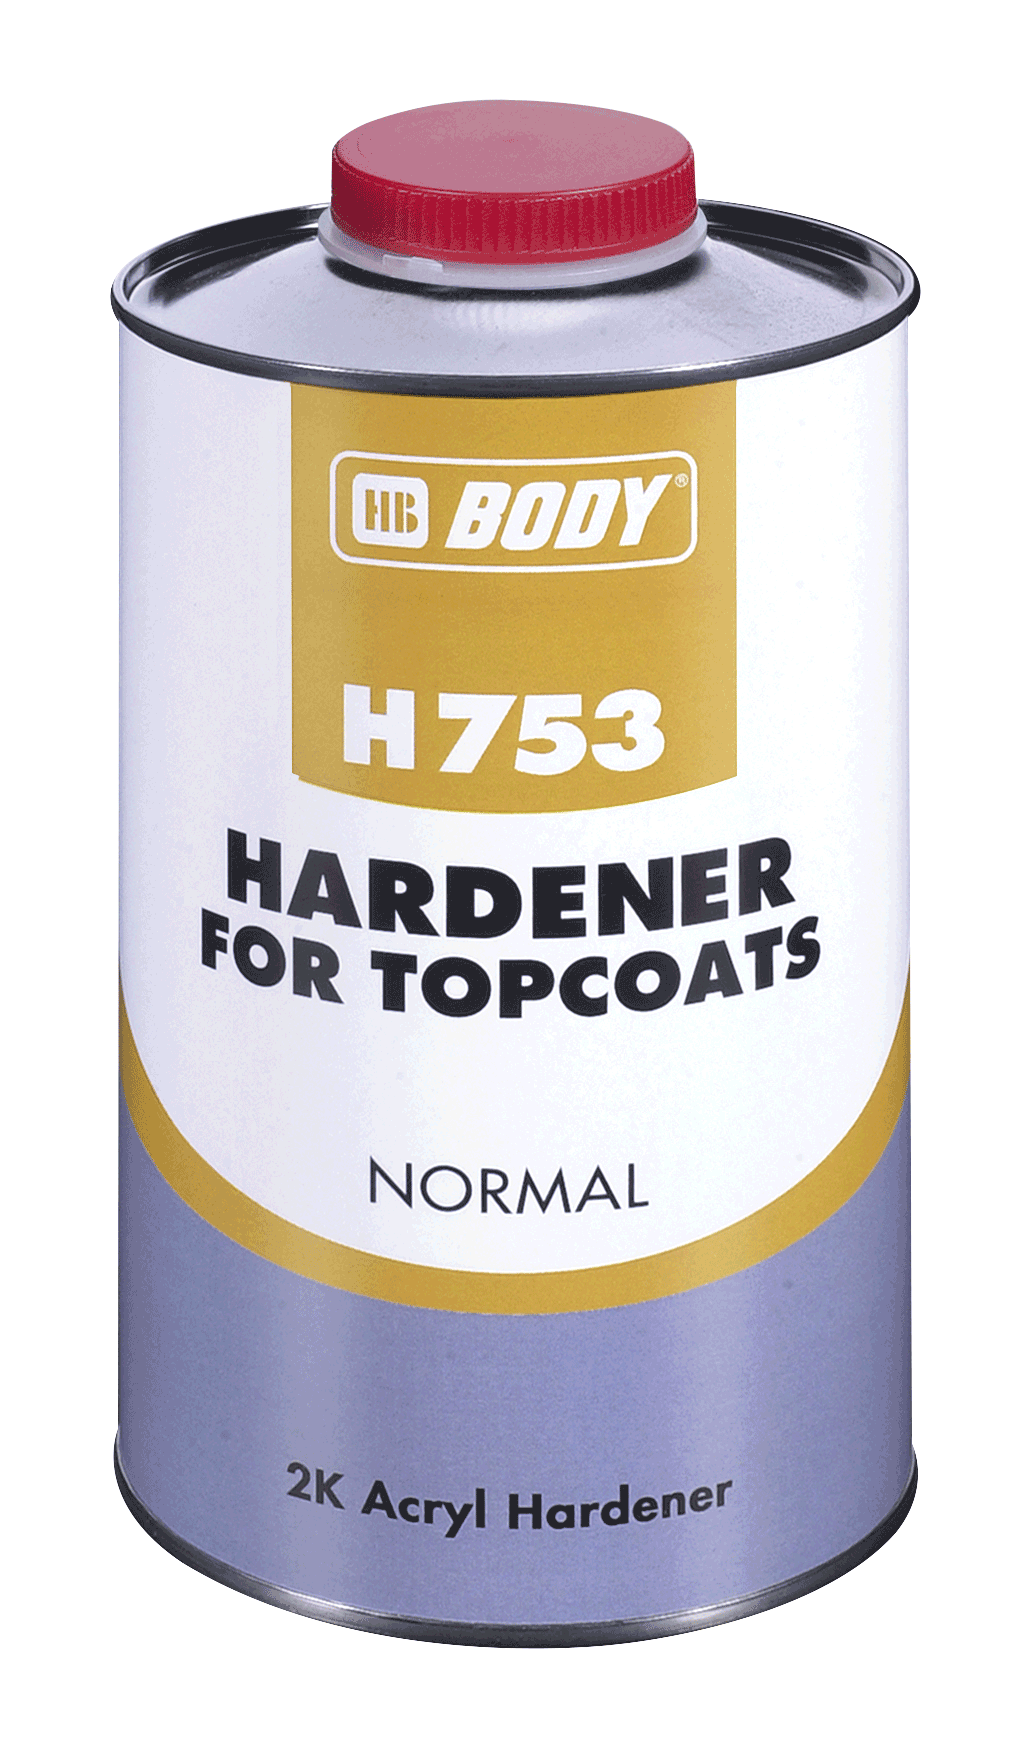 HB BODY Body 753 Hardener normal 5L